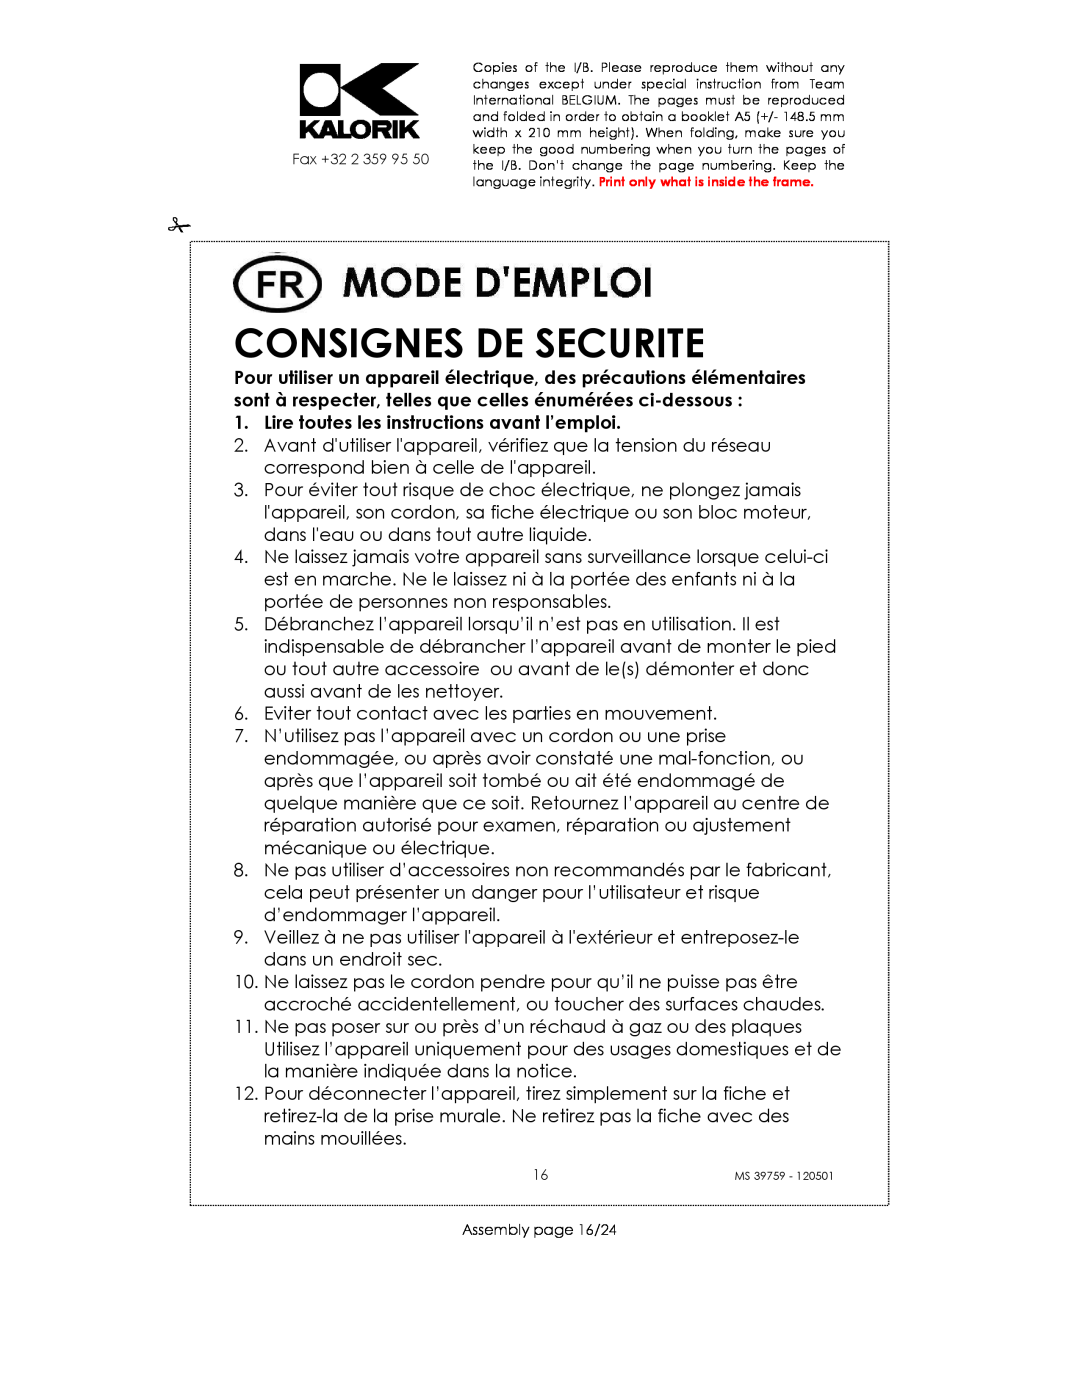 Kalorik uskms39759 manual Consignes De Securite, Lire toutes les instructions avant l’emploi 